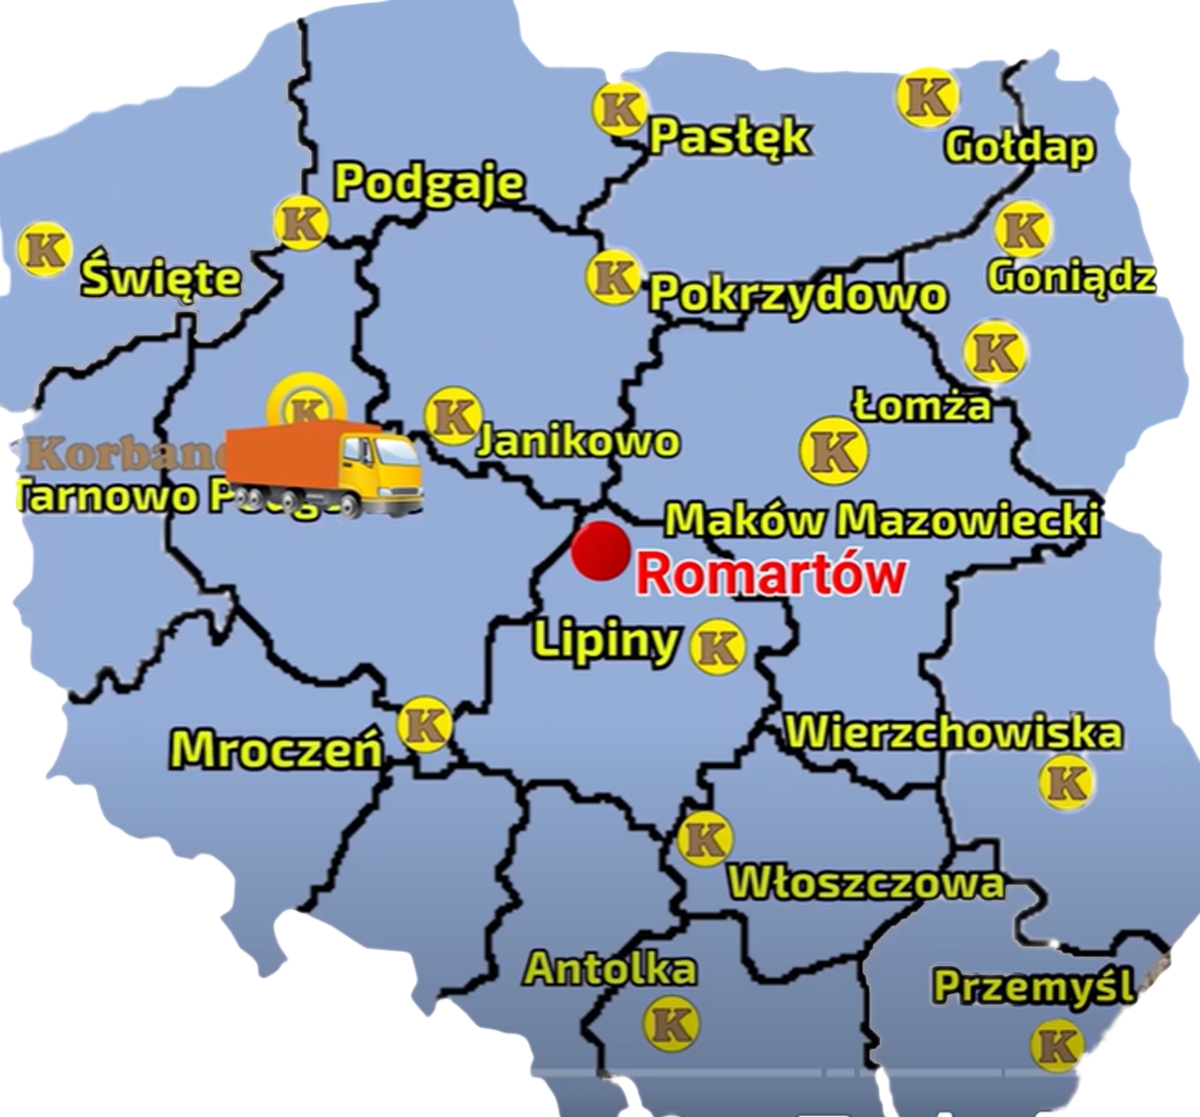 Mapa przedstawiajaca sieć sprzedazy Korbanek i miejscowośc, gdzie nastąpiła dostawa prasy do Klienta